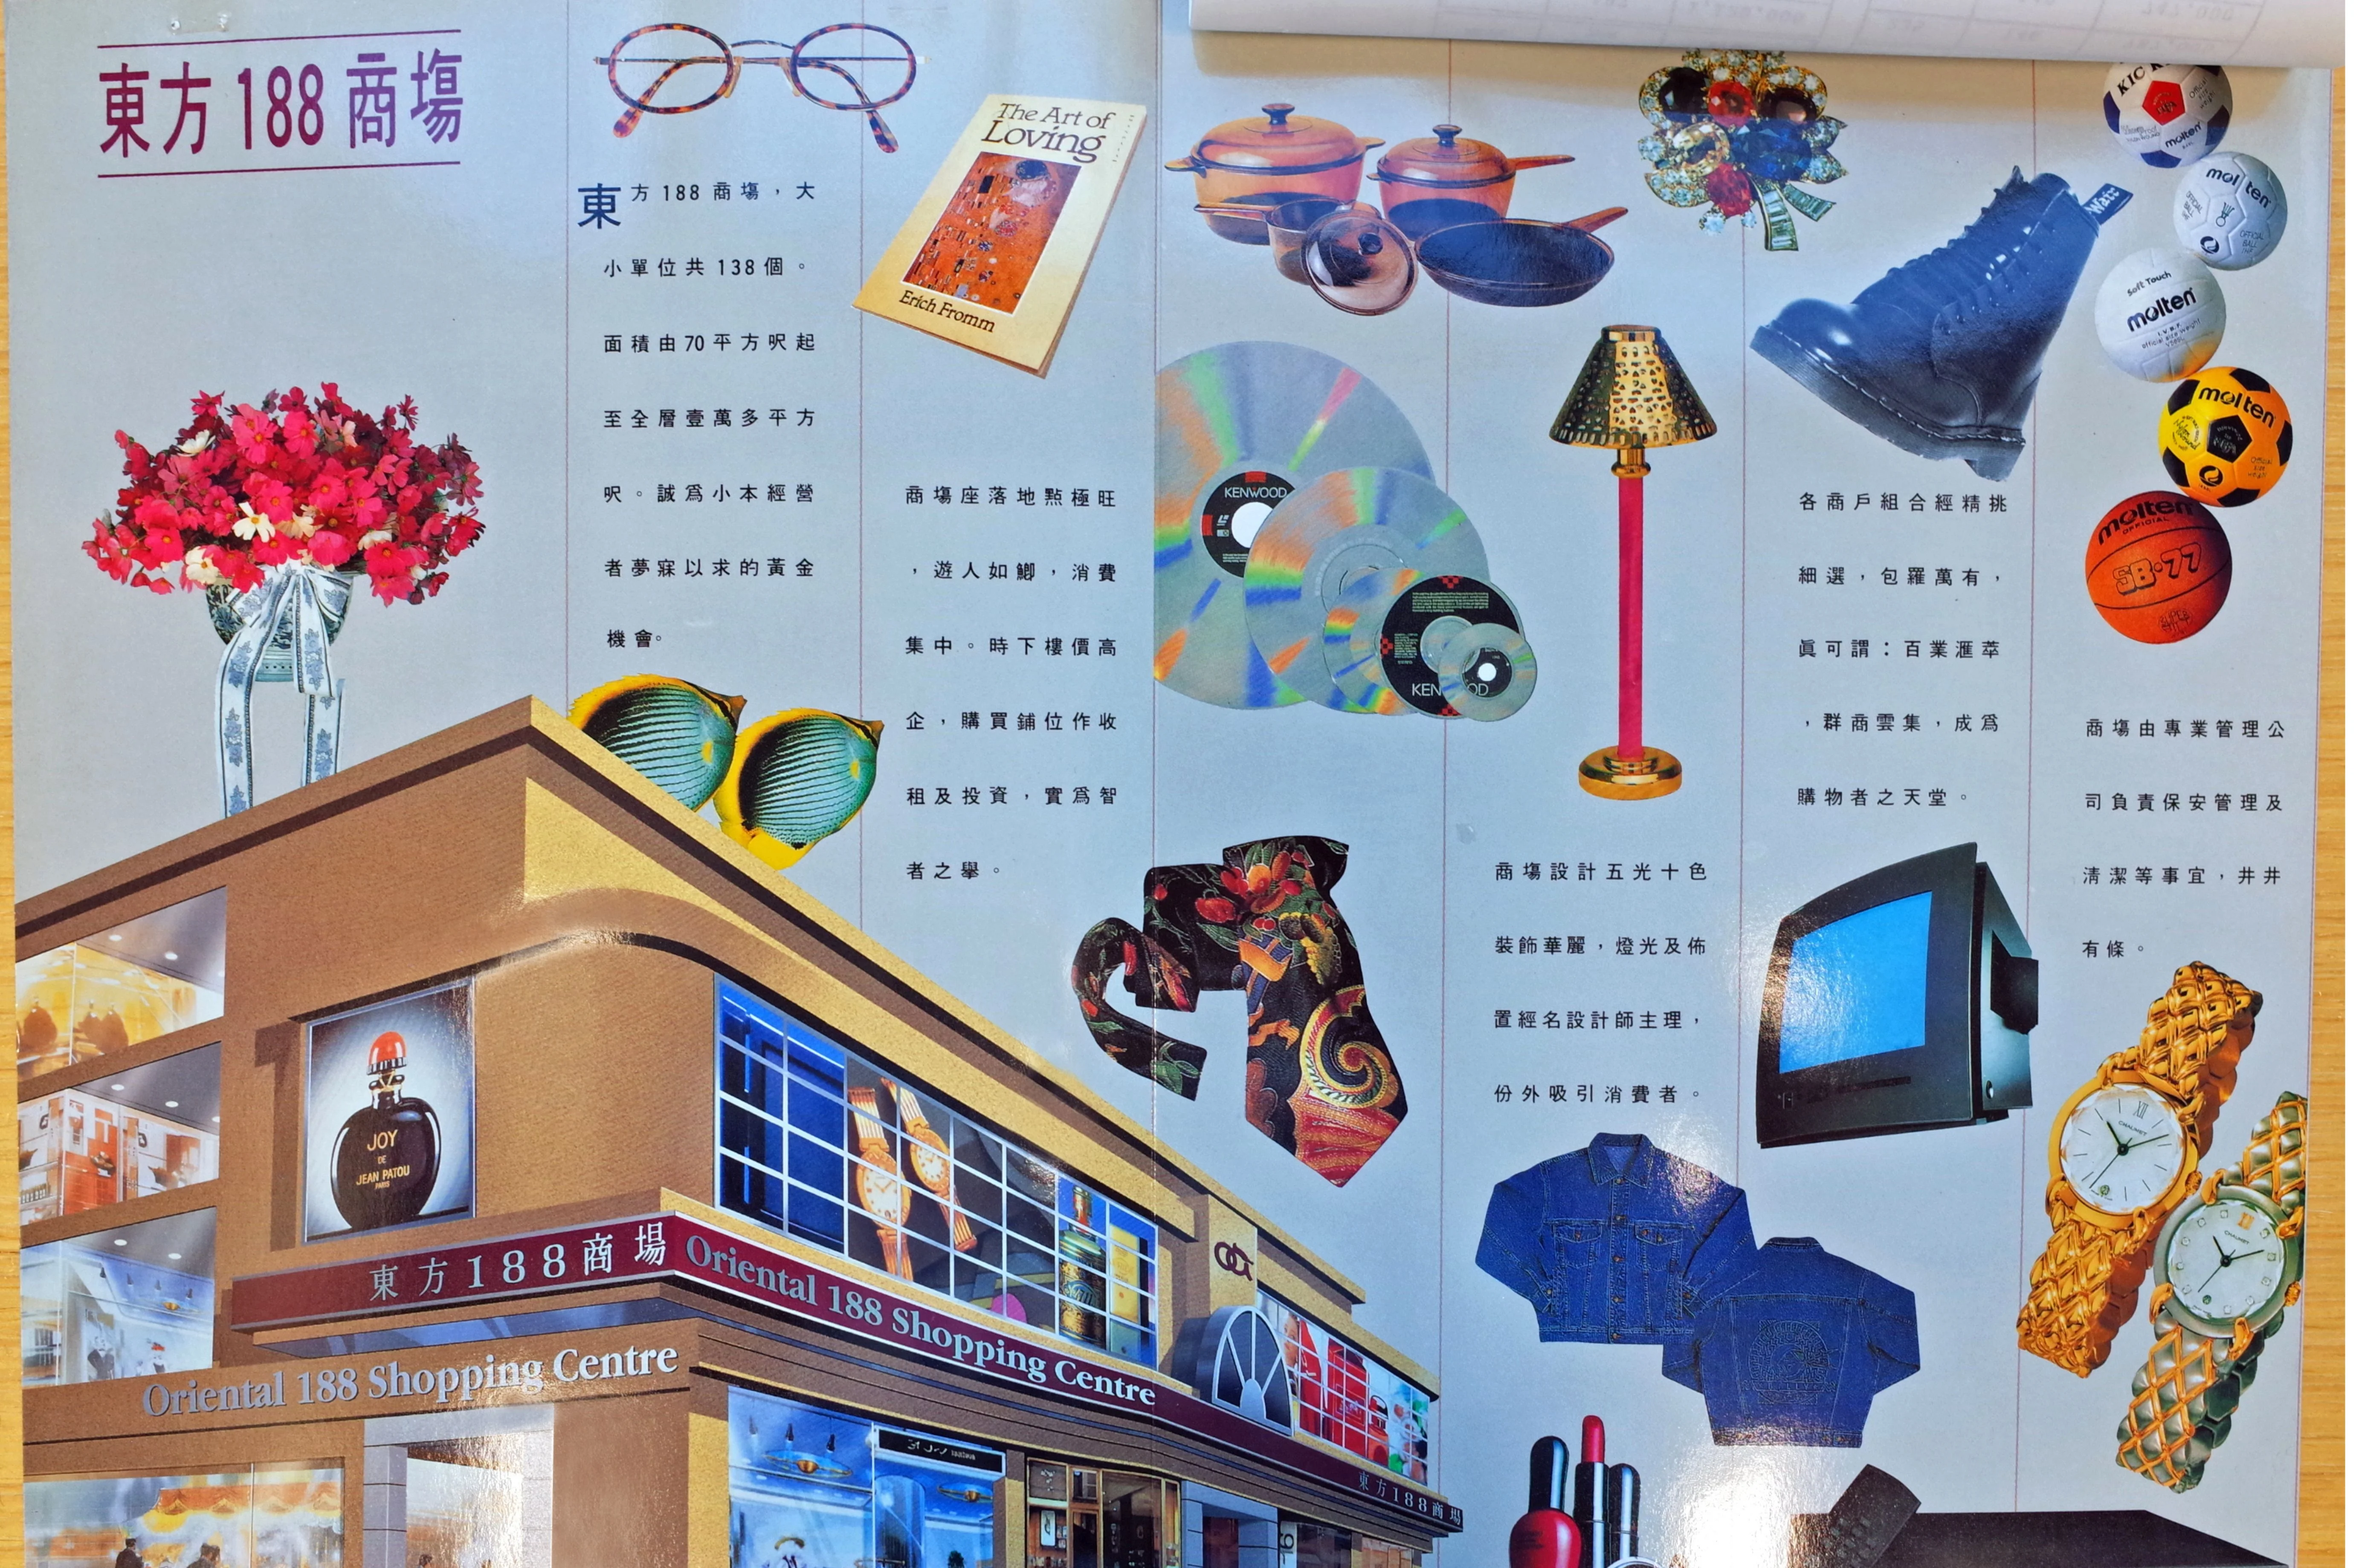 看《東方188商場說明書》，除了能瞥見九十年代初灣仔的零售風貌，亦可見當時流行的平面設計、排版風格。（圖片由受訪者提供）